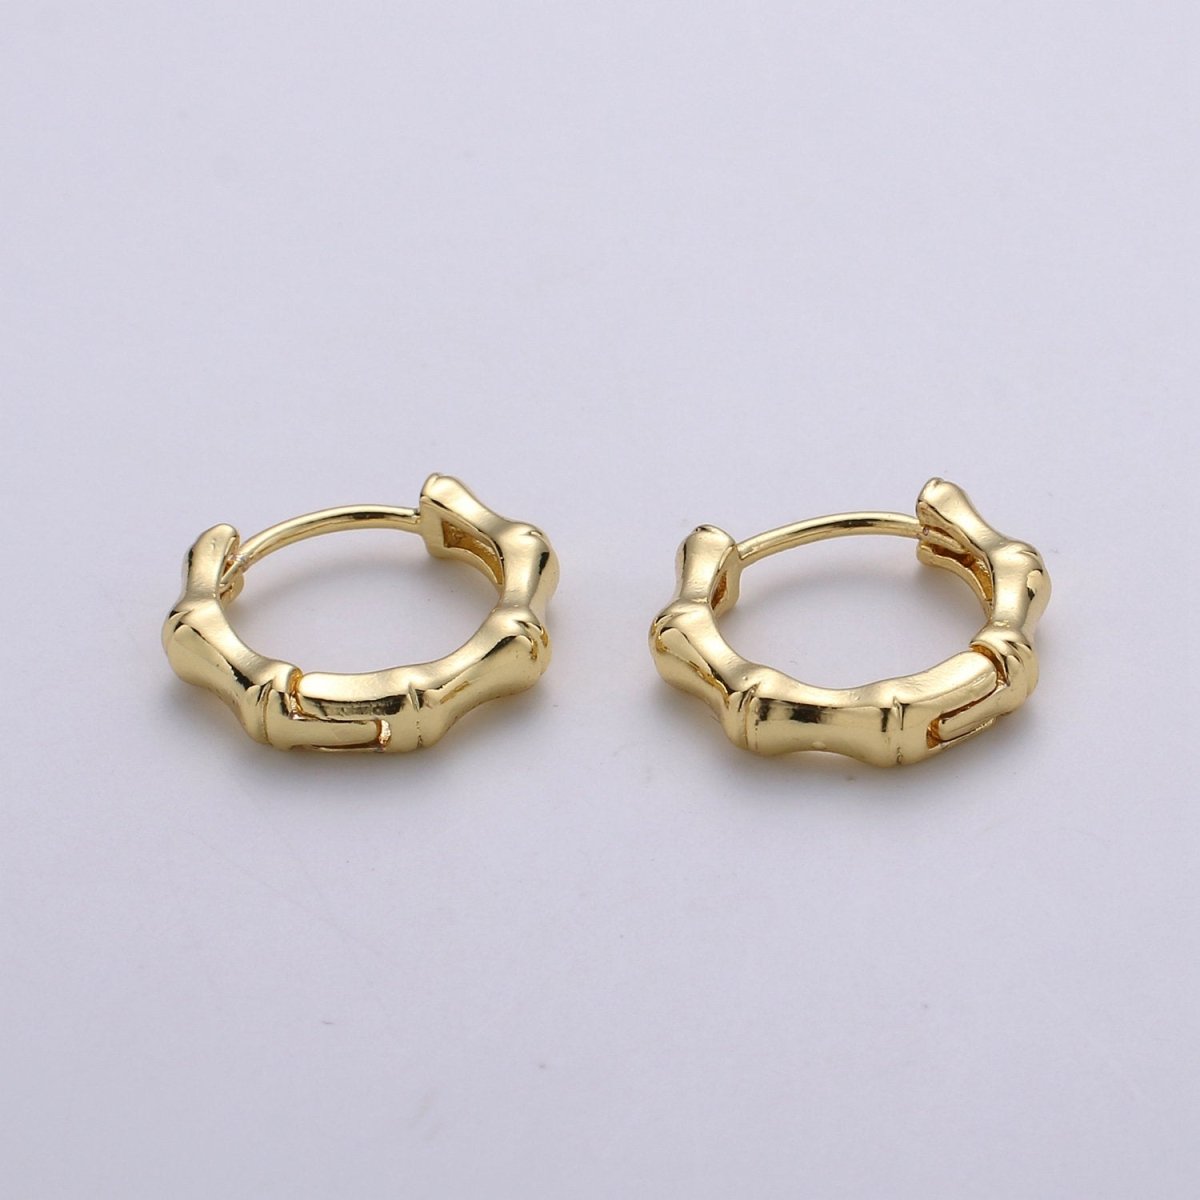 24k Vermeil Gold Earrings, Huggie Earring, Dainty Earrings, Tiny Bamboo Earrings, Everyday Wear Earrings, Rose gold Earring, 15mm Earring K-676 K-677 - DLUXCA